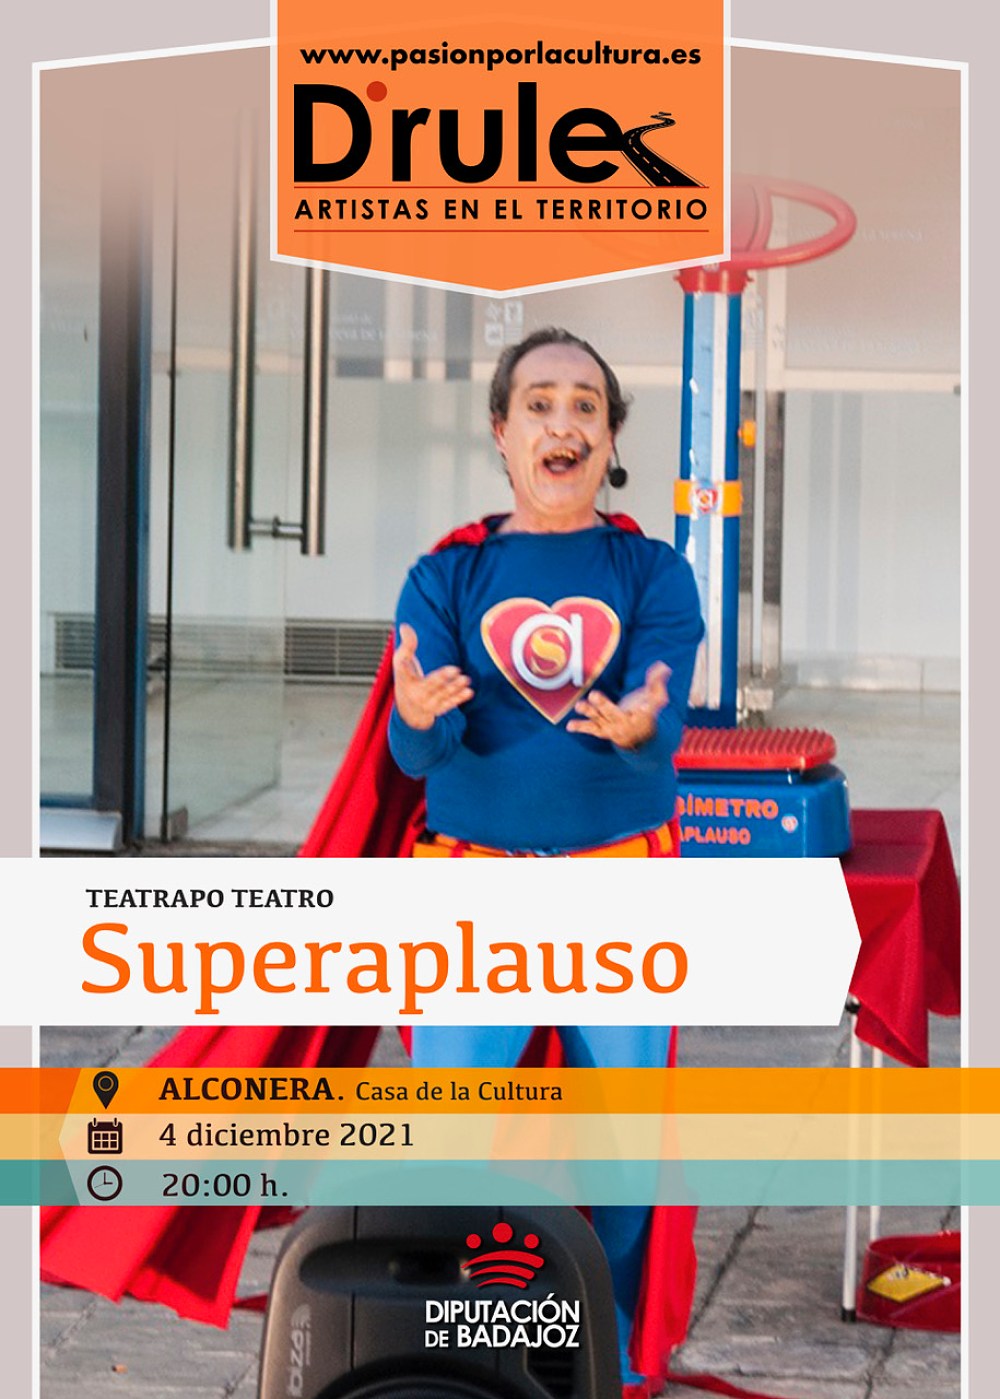 TEATRO | D'Rule 21: «Superaplauso», de Teatrapo